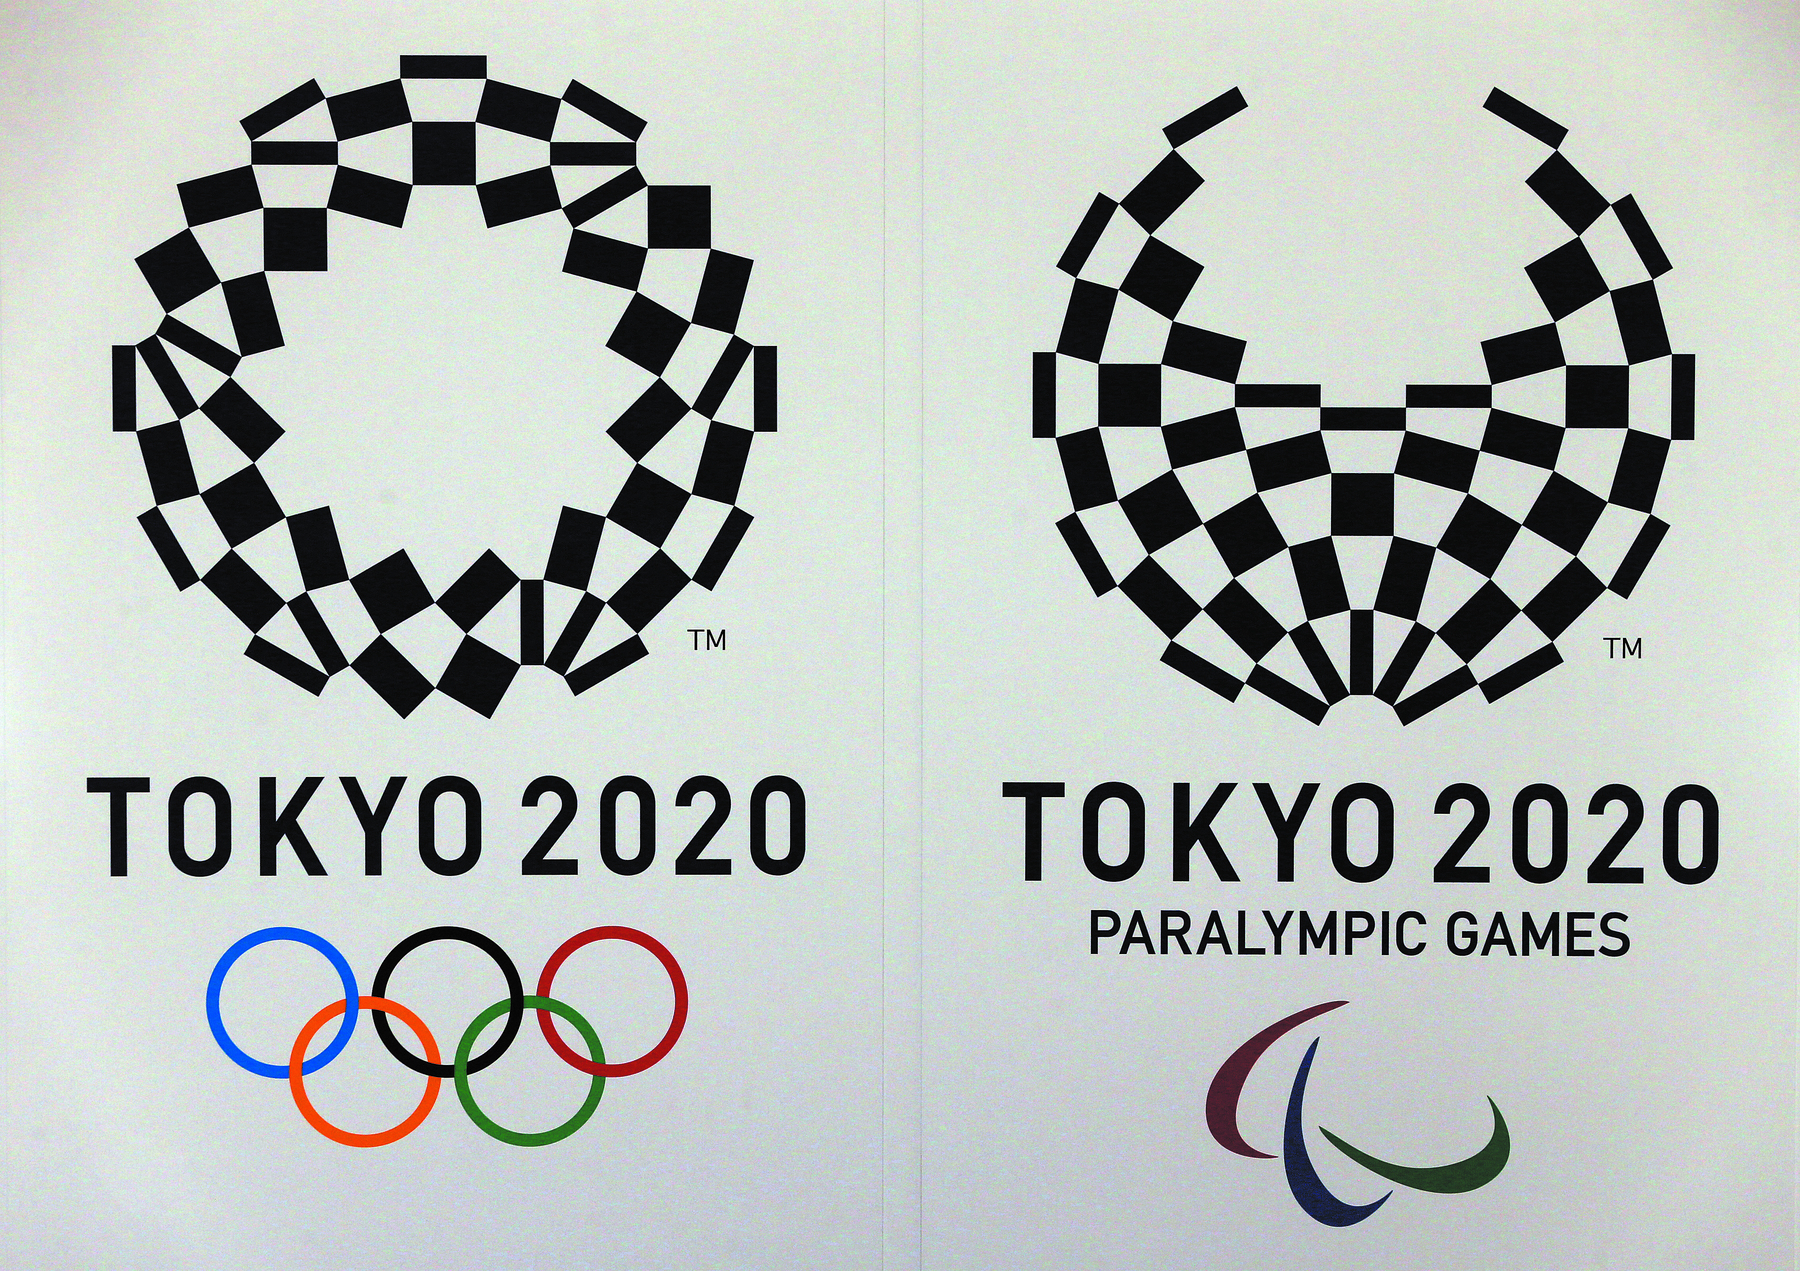 Fotografia. 2 símbolos dos jogos olímpicos e paralímpicos. À direita, na parte superior, há uma figura de um símbolo, composta por vários retângulos em preto que um globo. Abaixo do globo está escrito TOKYO 2020. Na parte inferior, há seis argolas coloridas entrelaçadas. 

À esquerda, na parte superior, há uma figura de um símbolo, composta por vários retângulos em preto que se unem para formar um globo, sendo a parte superior é aberta acima, abaixo escrito TOKYO 2020 paralympic games. Na parte inferior, há três linhas curvas nas cores vermelha, azul e verde.